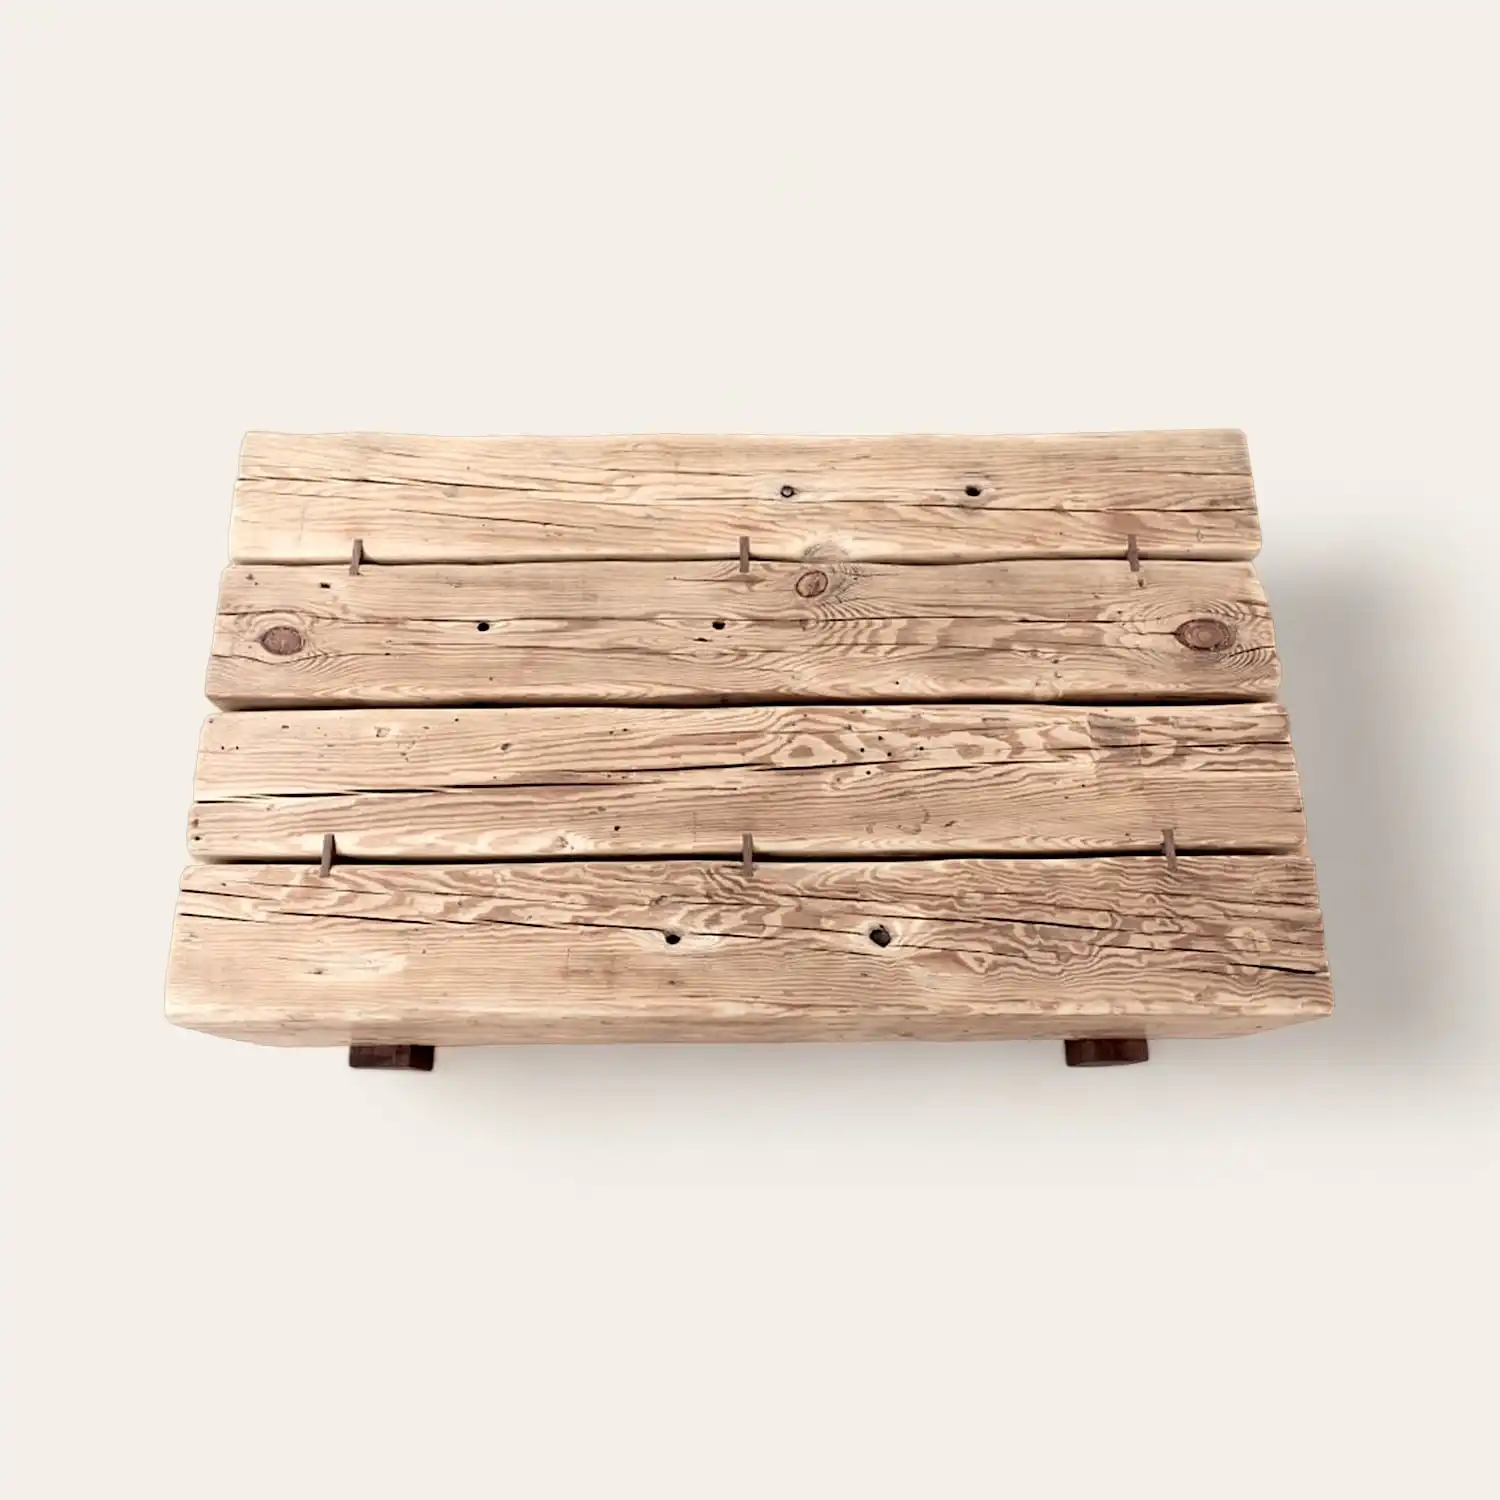  Une image d’une table basse rustique en bois sur fond blanc. 